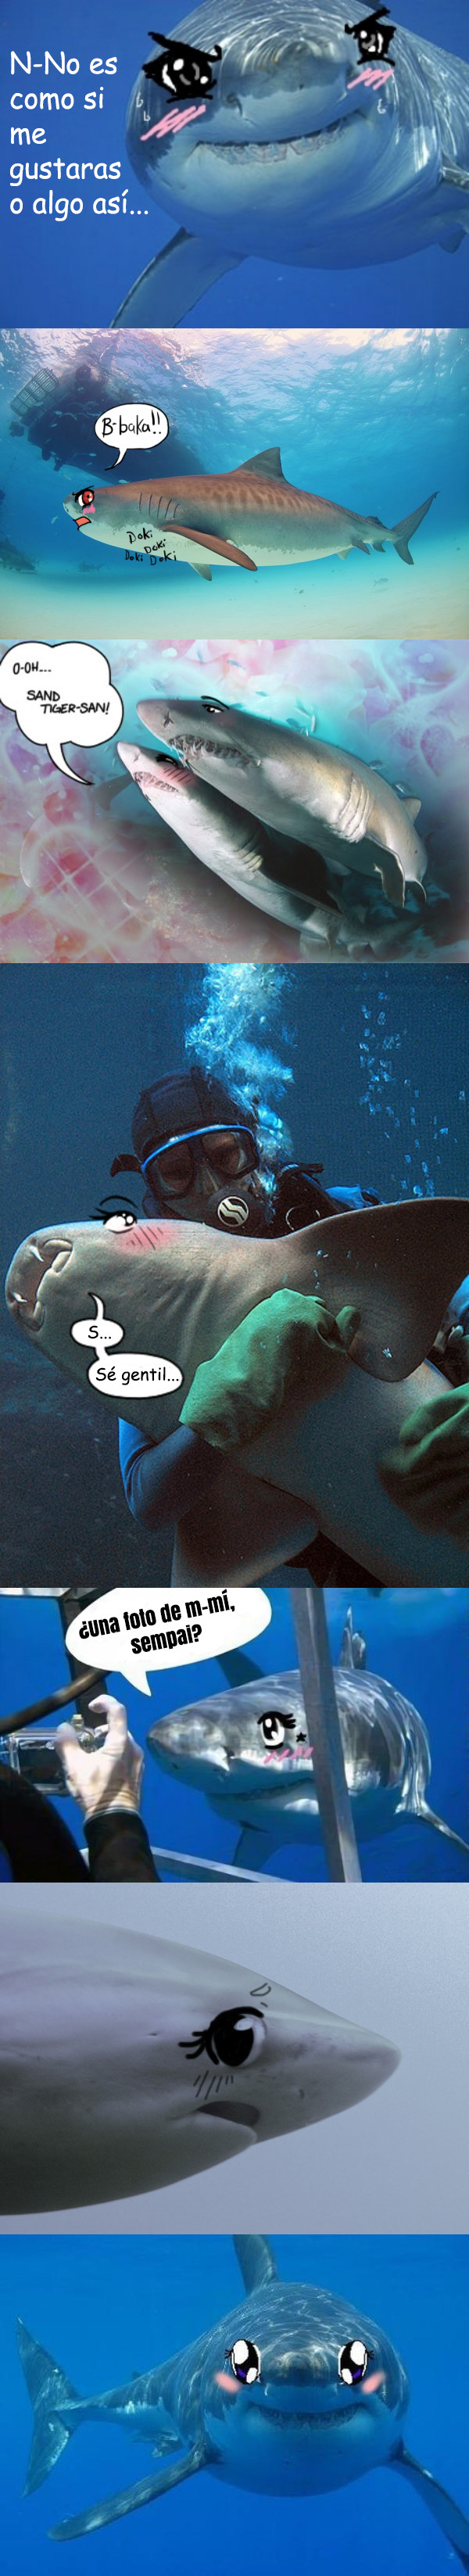 Meme_otros - Tiburones, los incomprendidos del mar